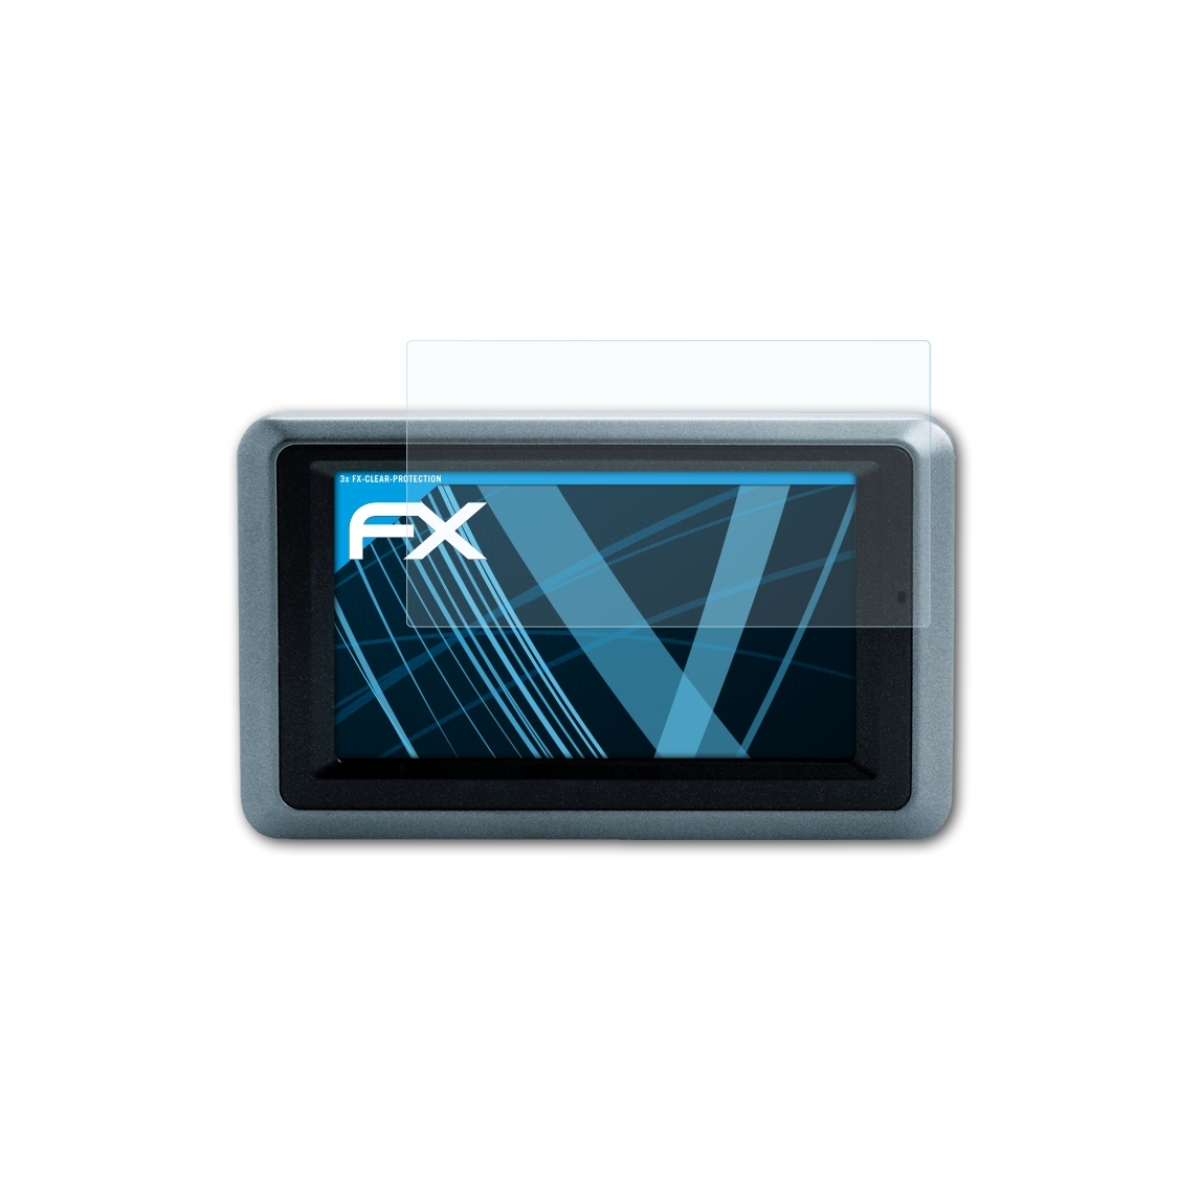 ATFOLIX 3x FX-Clear Zumo 660) Displayschutz(für Garmin